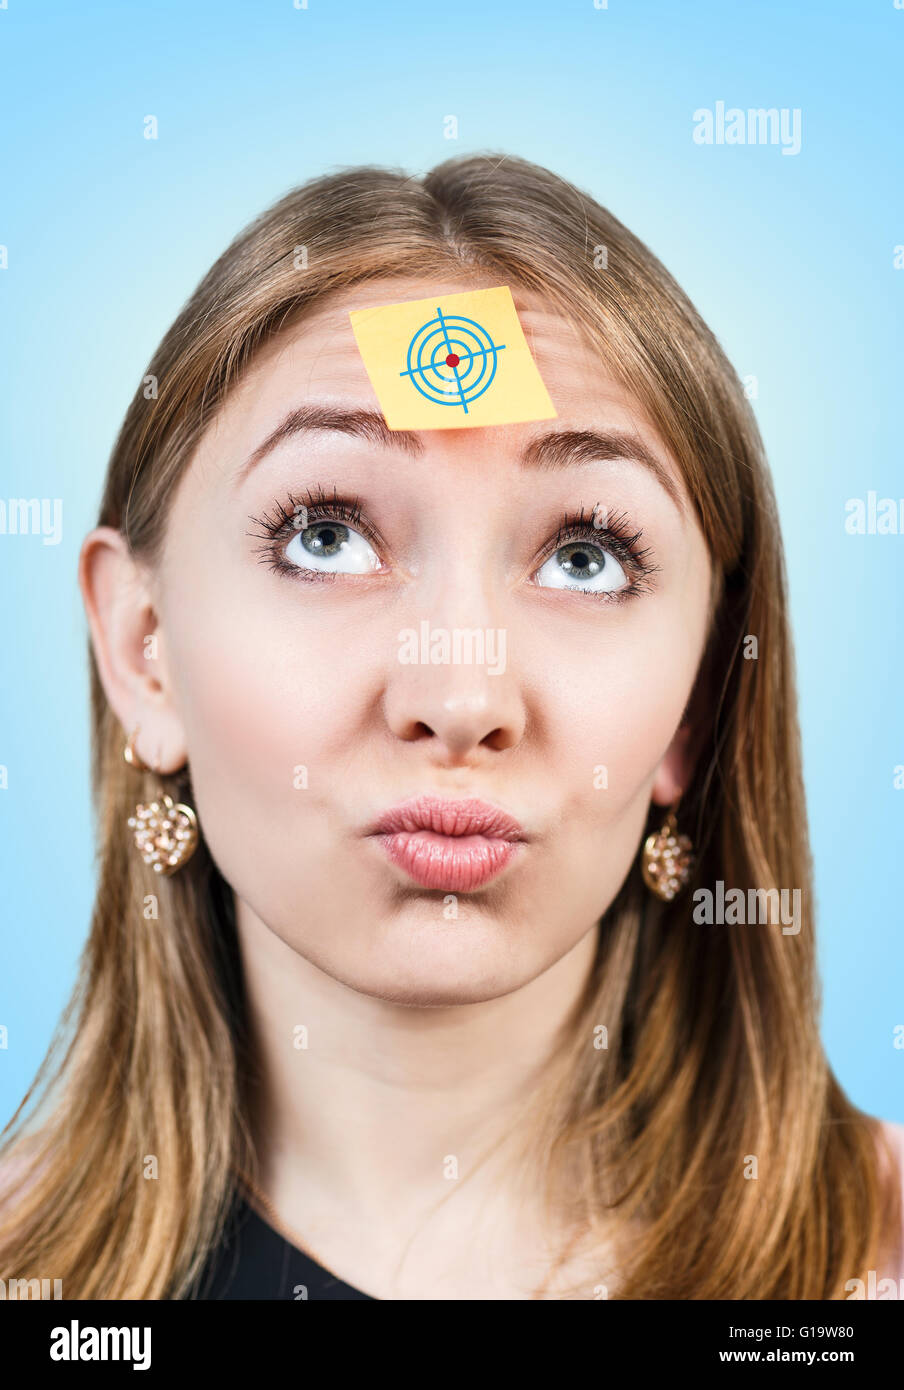 Un portrait d'une jeune femme confuse avec un post-it sur son front Banque D'Images